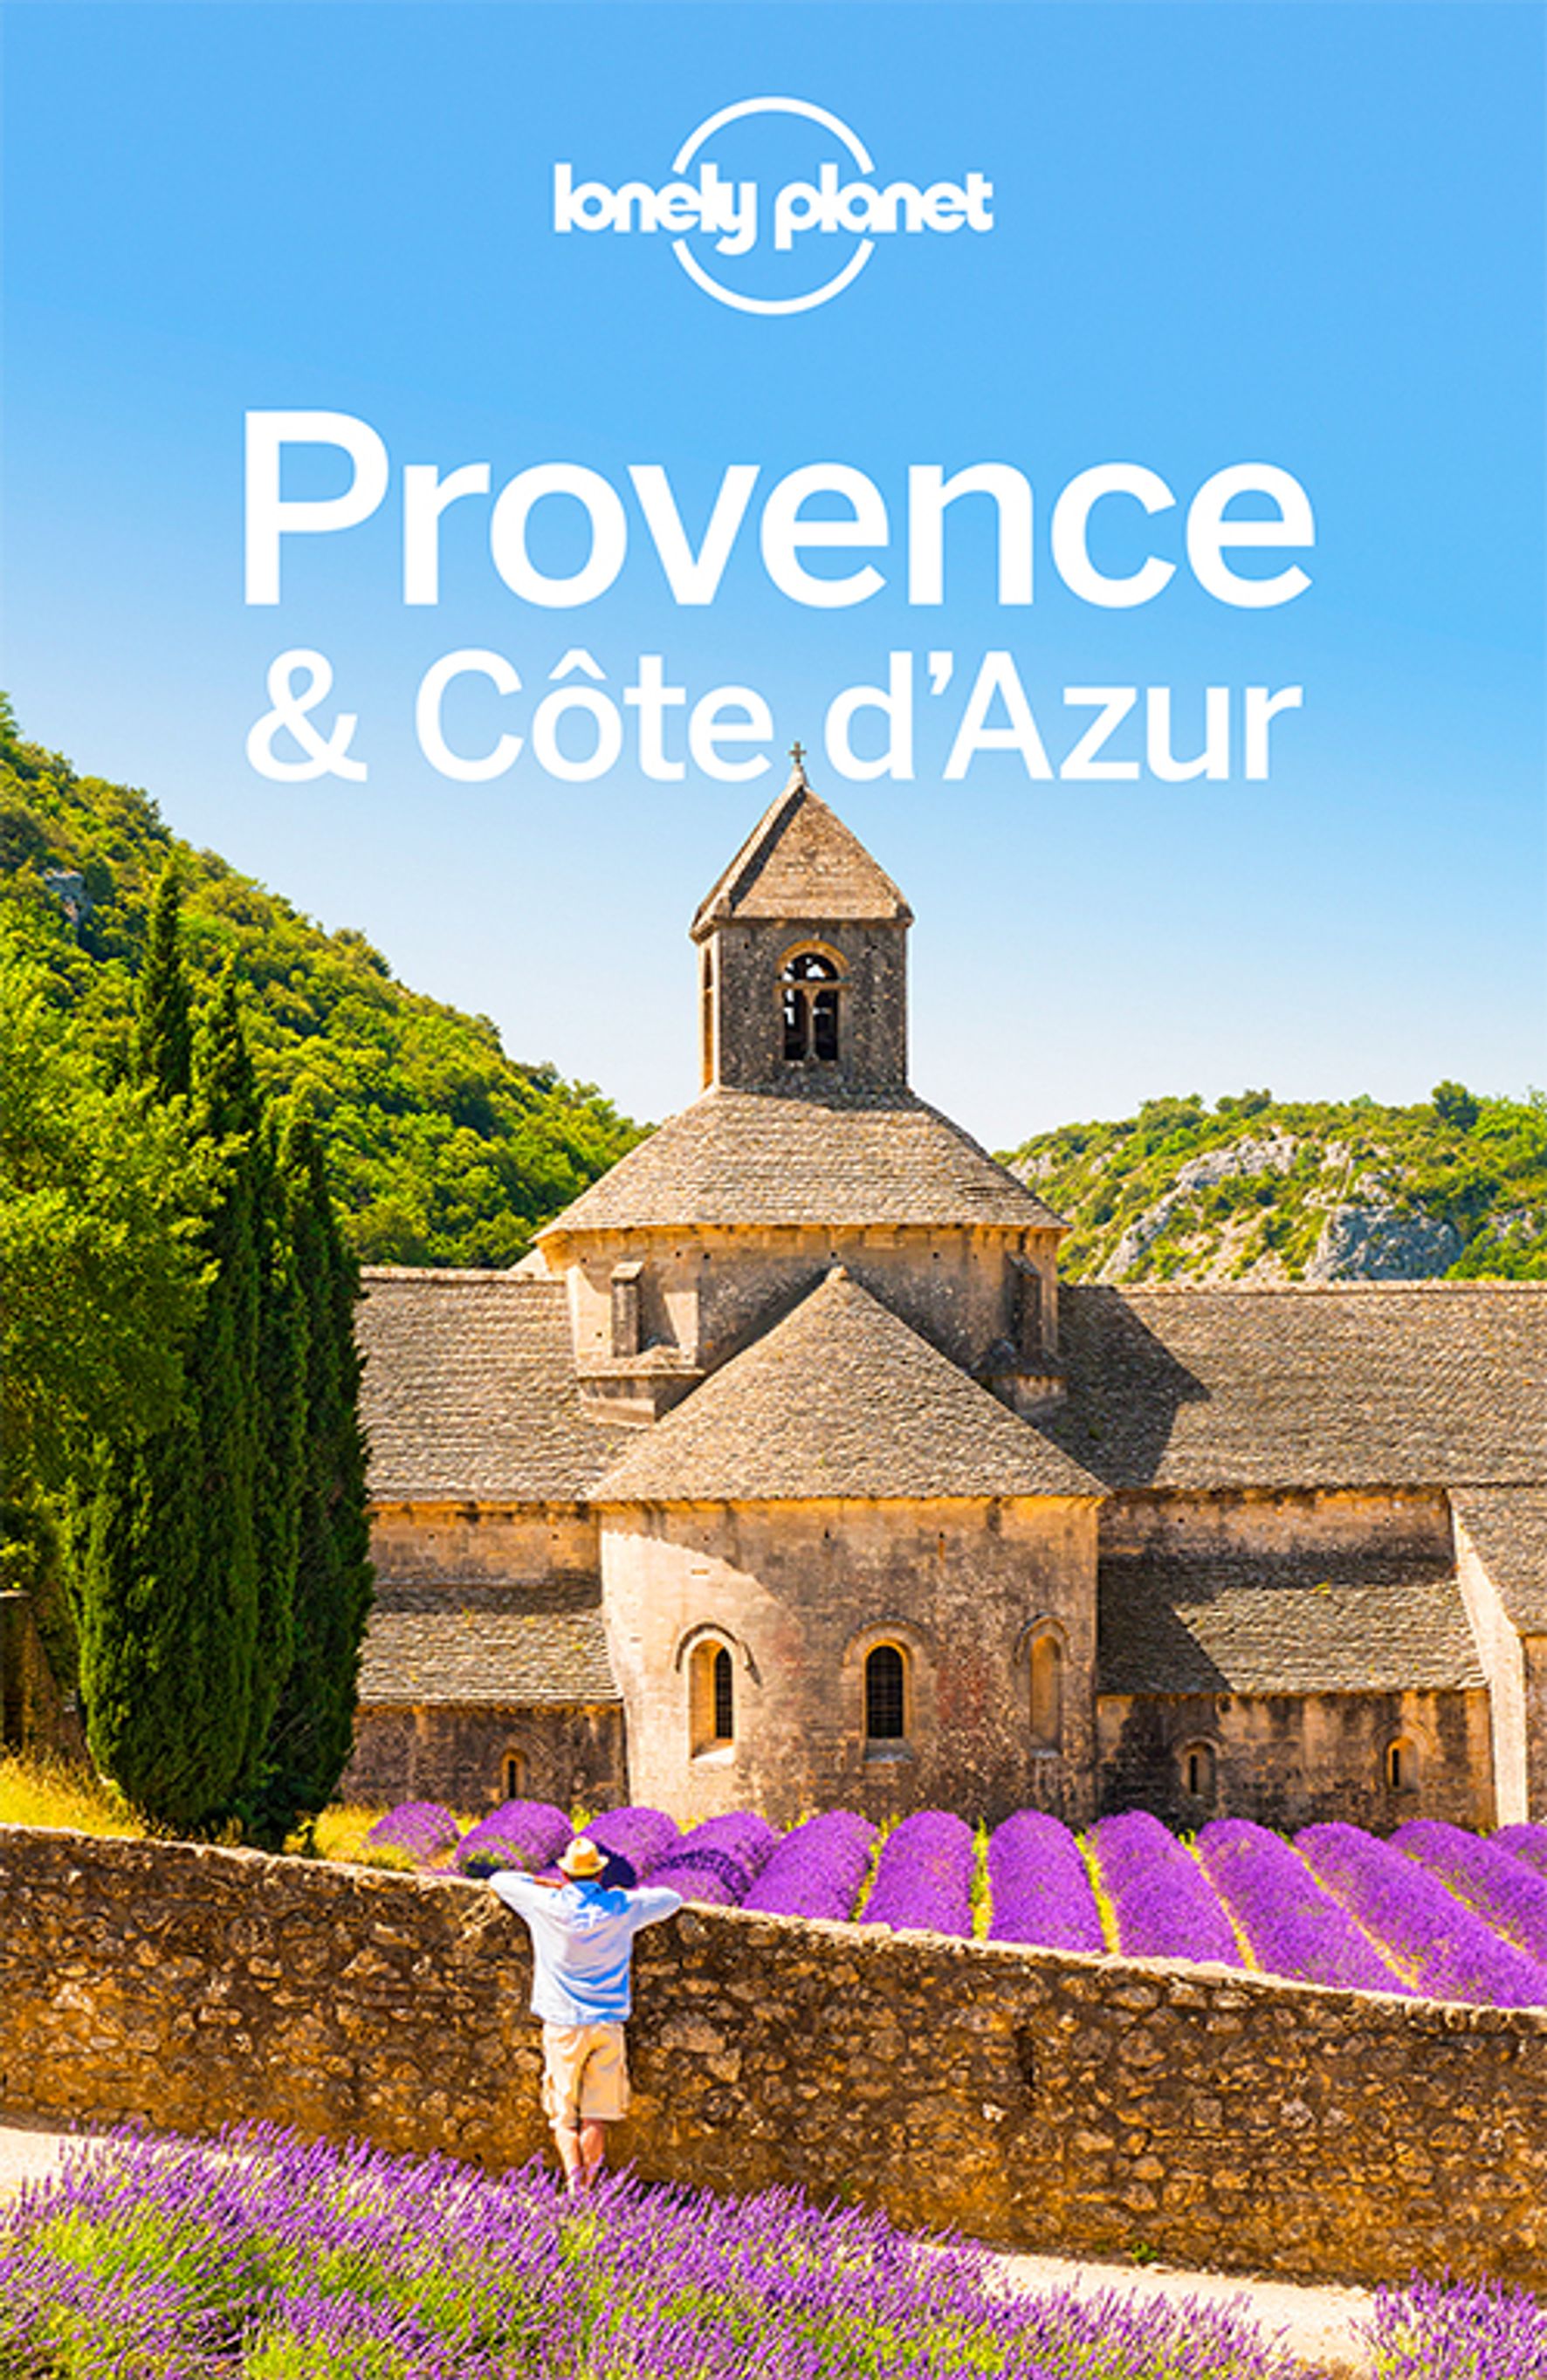 Lonely Planet Provence, Côte d'Azur (eBook)